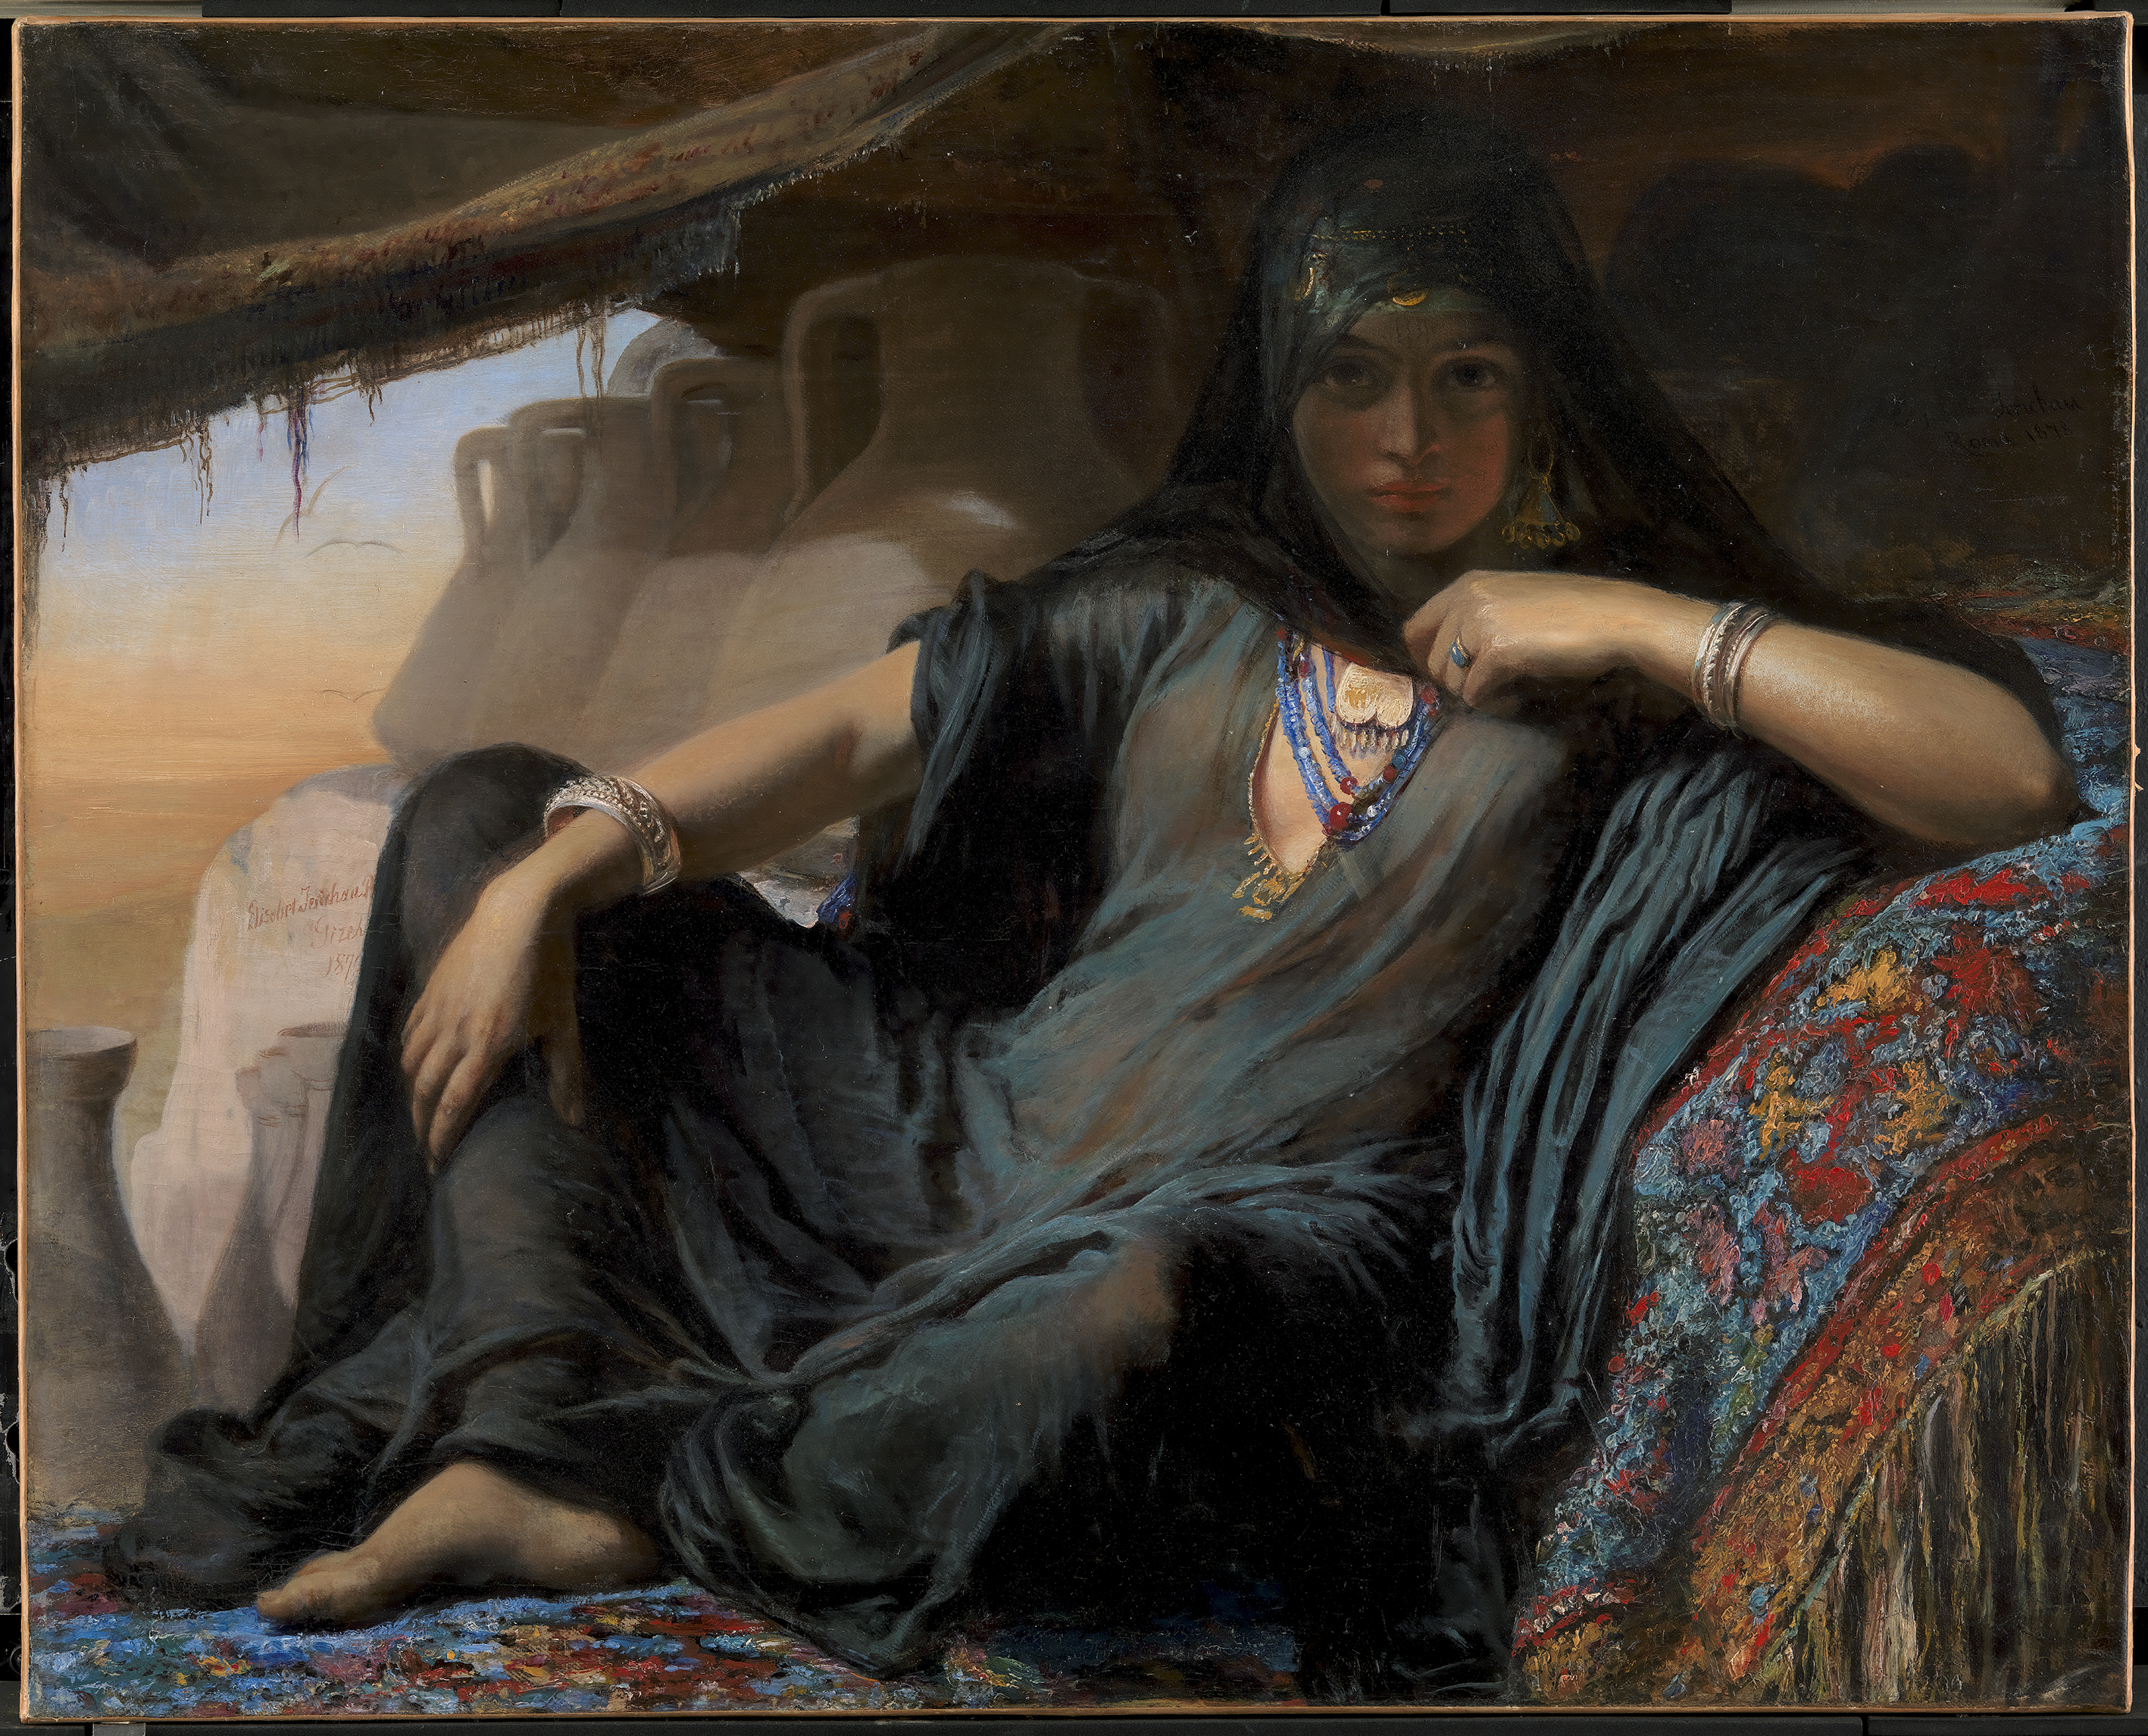 Египтянка, торгующая горшками в Гизе by Elisabeth Jerichau Baumann - 1819 - 92 x 114 cm 